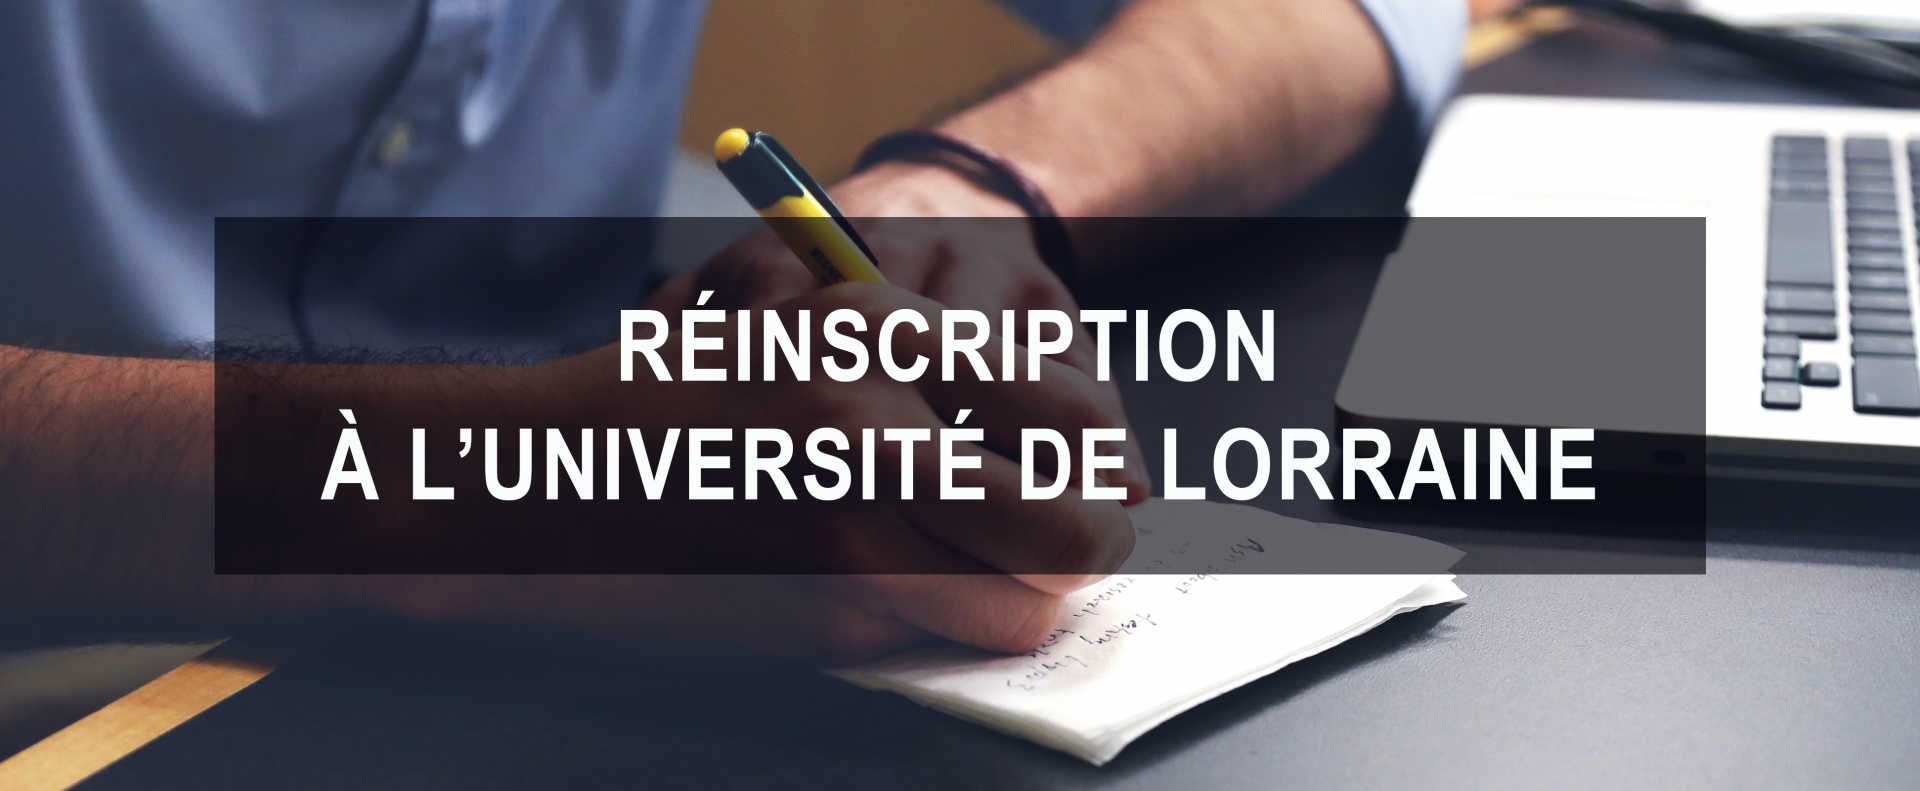 En savoir plus sur la réinscription à l'Université de Lorraine